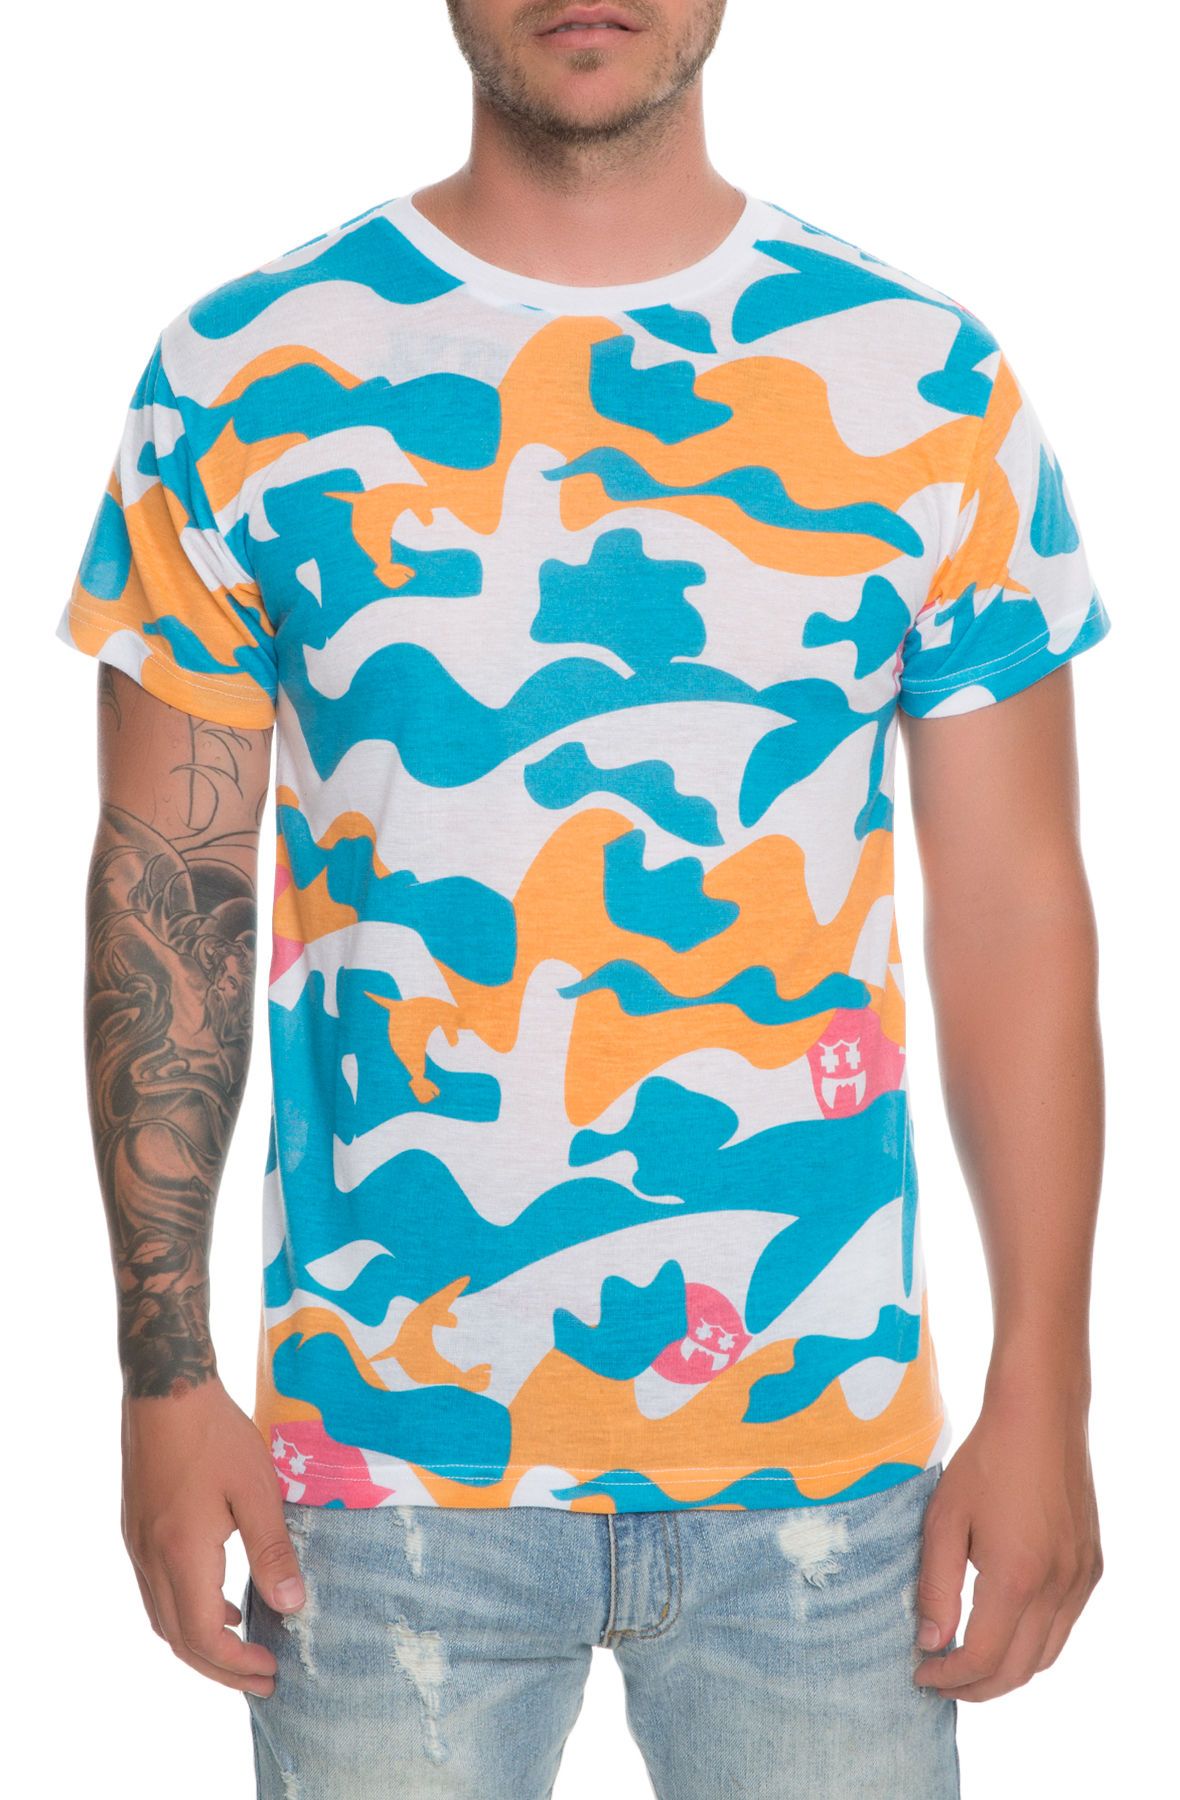 dolphins camo shirt